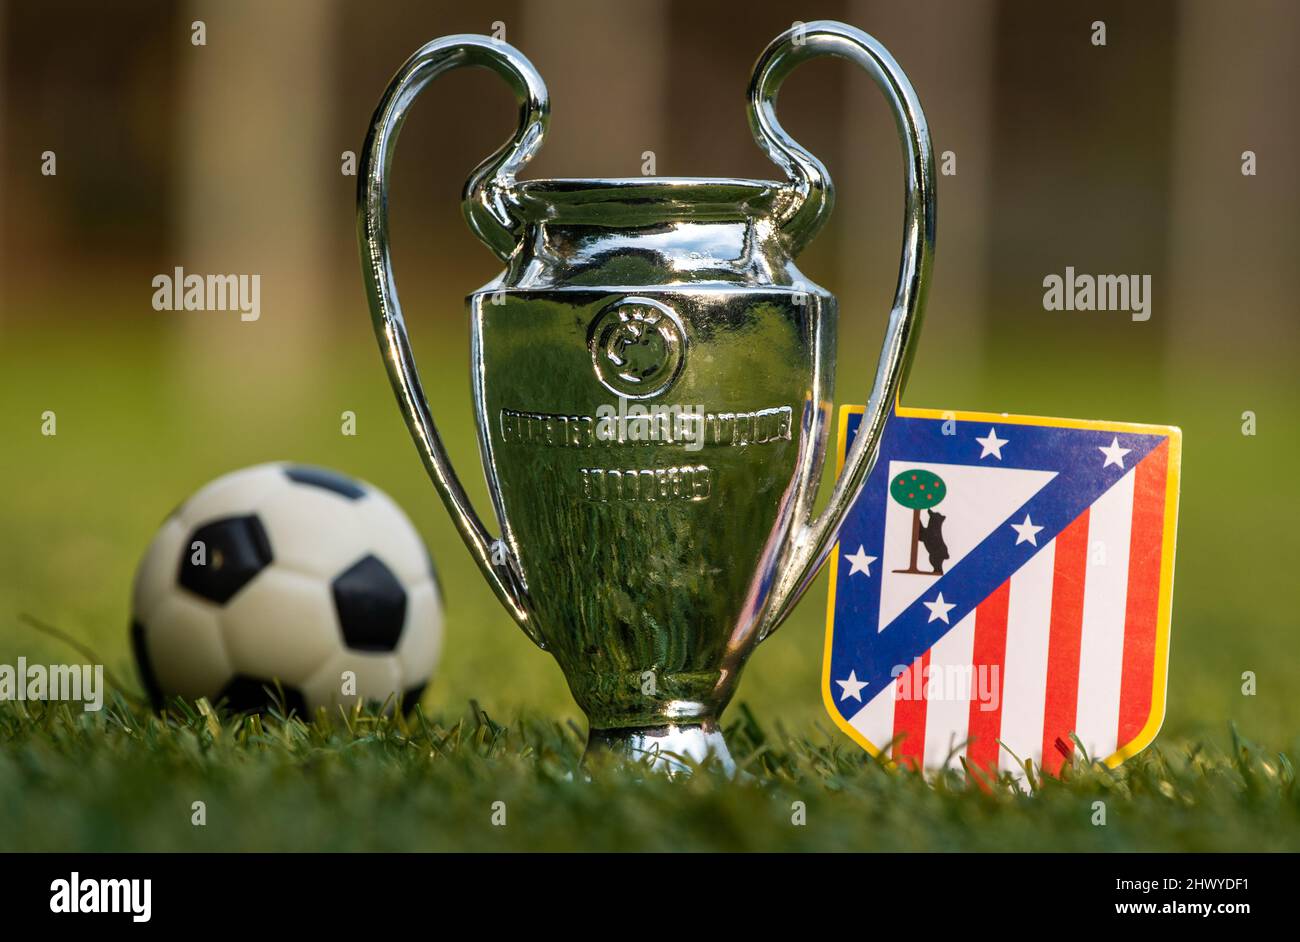 27 de agosto de 2021, Madrid, España. Emblema del club de fútbol Atlético de Madrid y de la Copa de la Liga de Campeones de la UEFA en el césped verde del estadio. Foto de stock